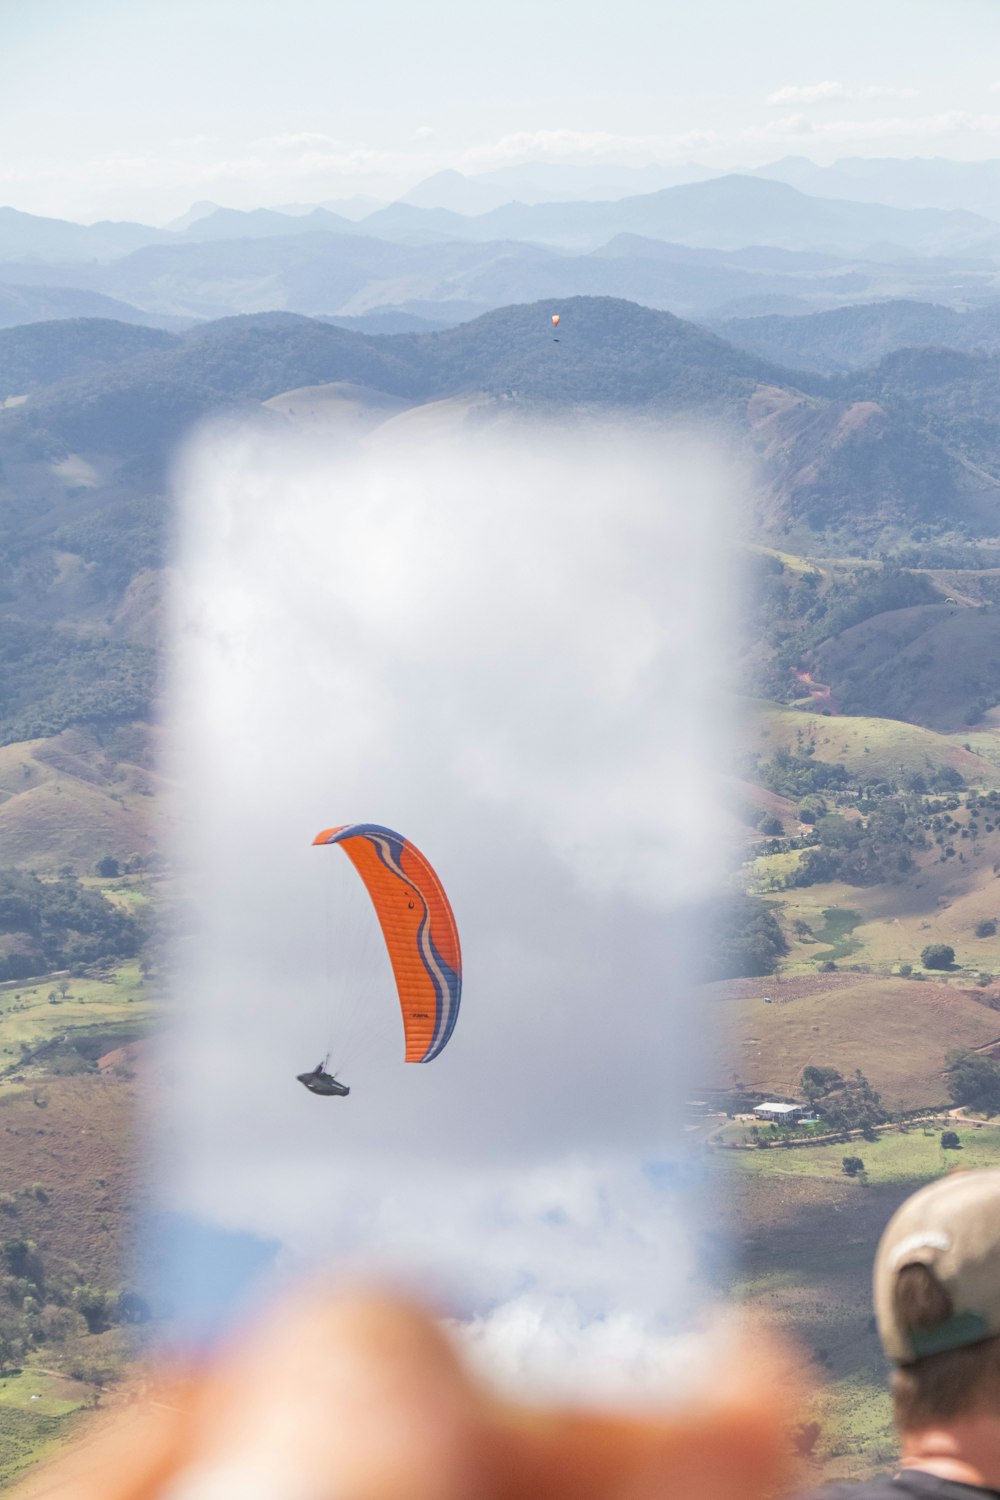 une personne tenant un téléphone cellulaire avec une photo d’une personne parachute ascensionnel